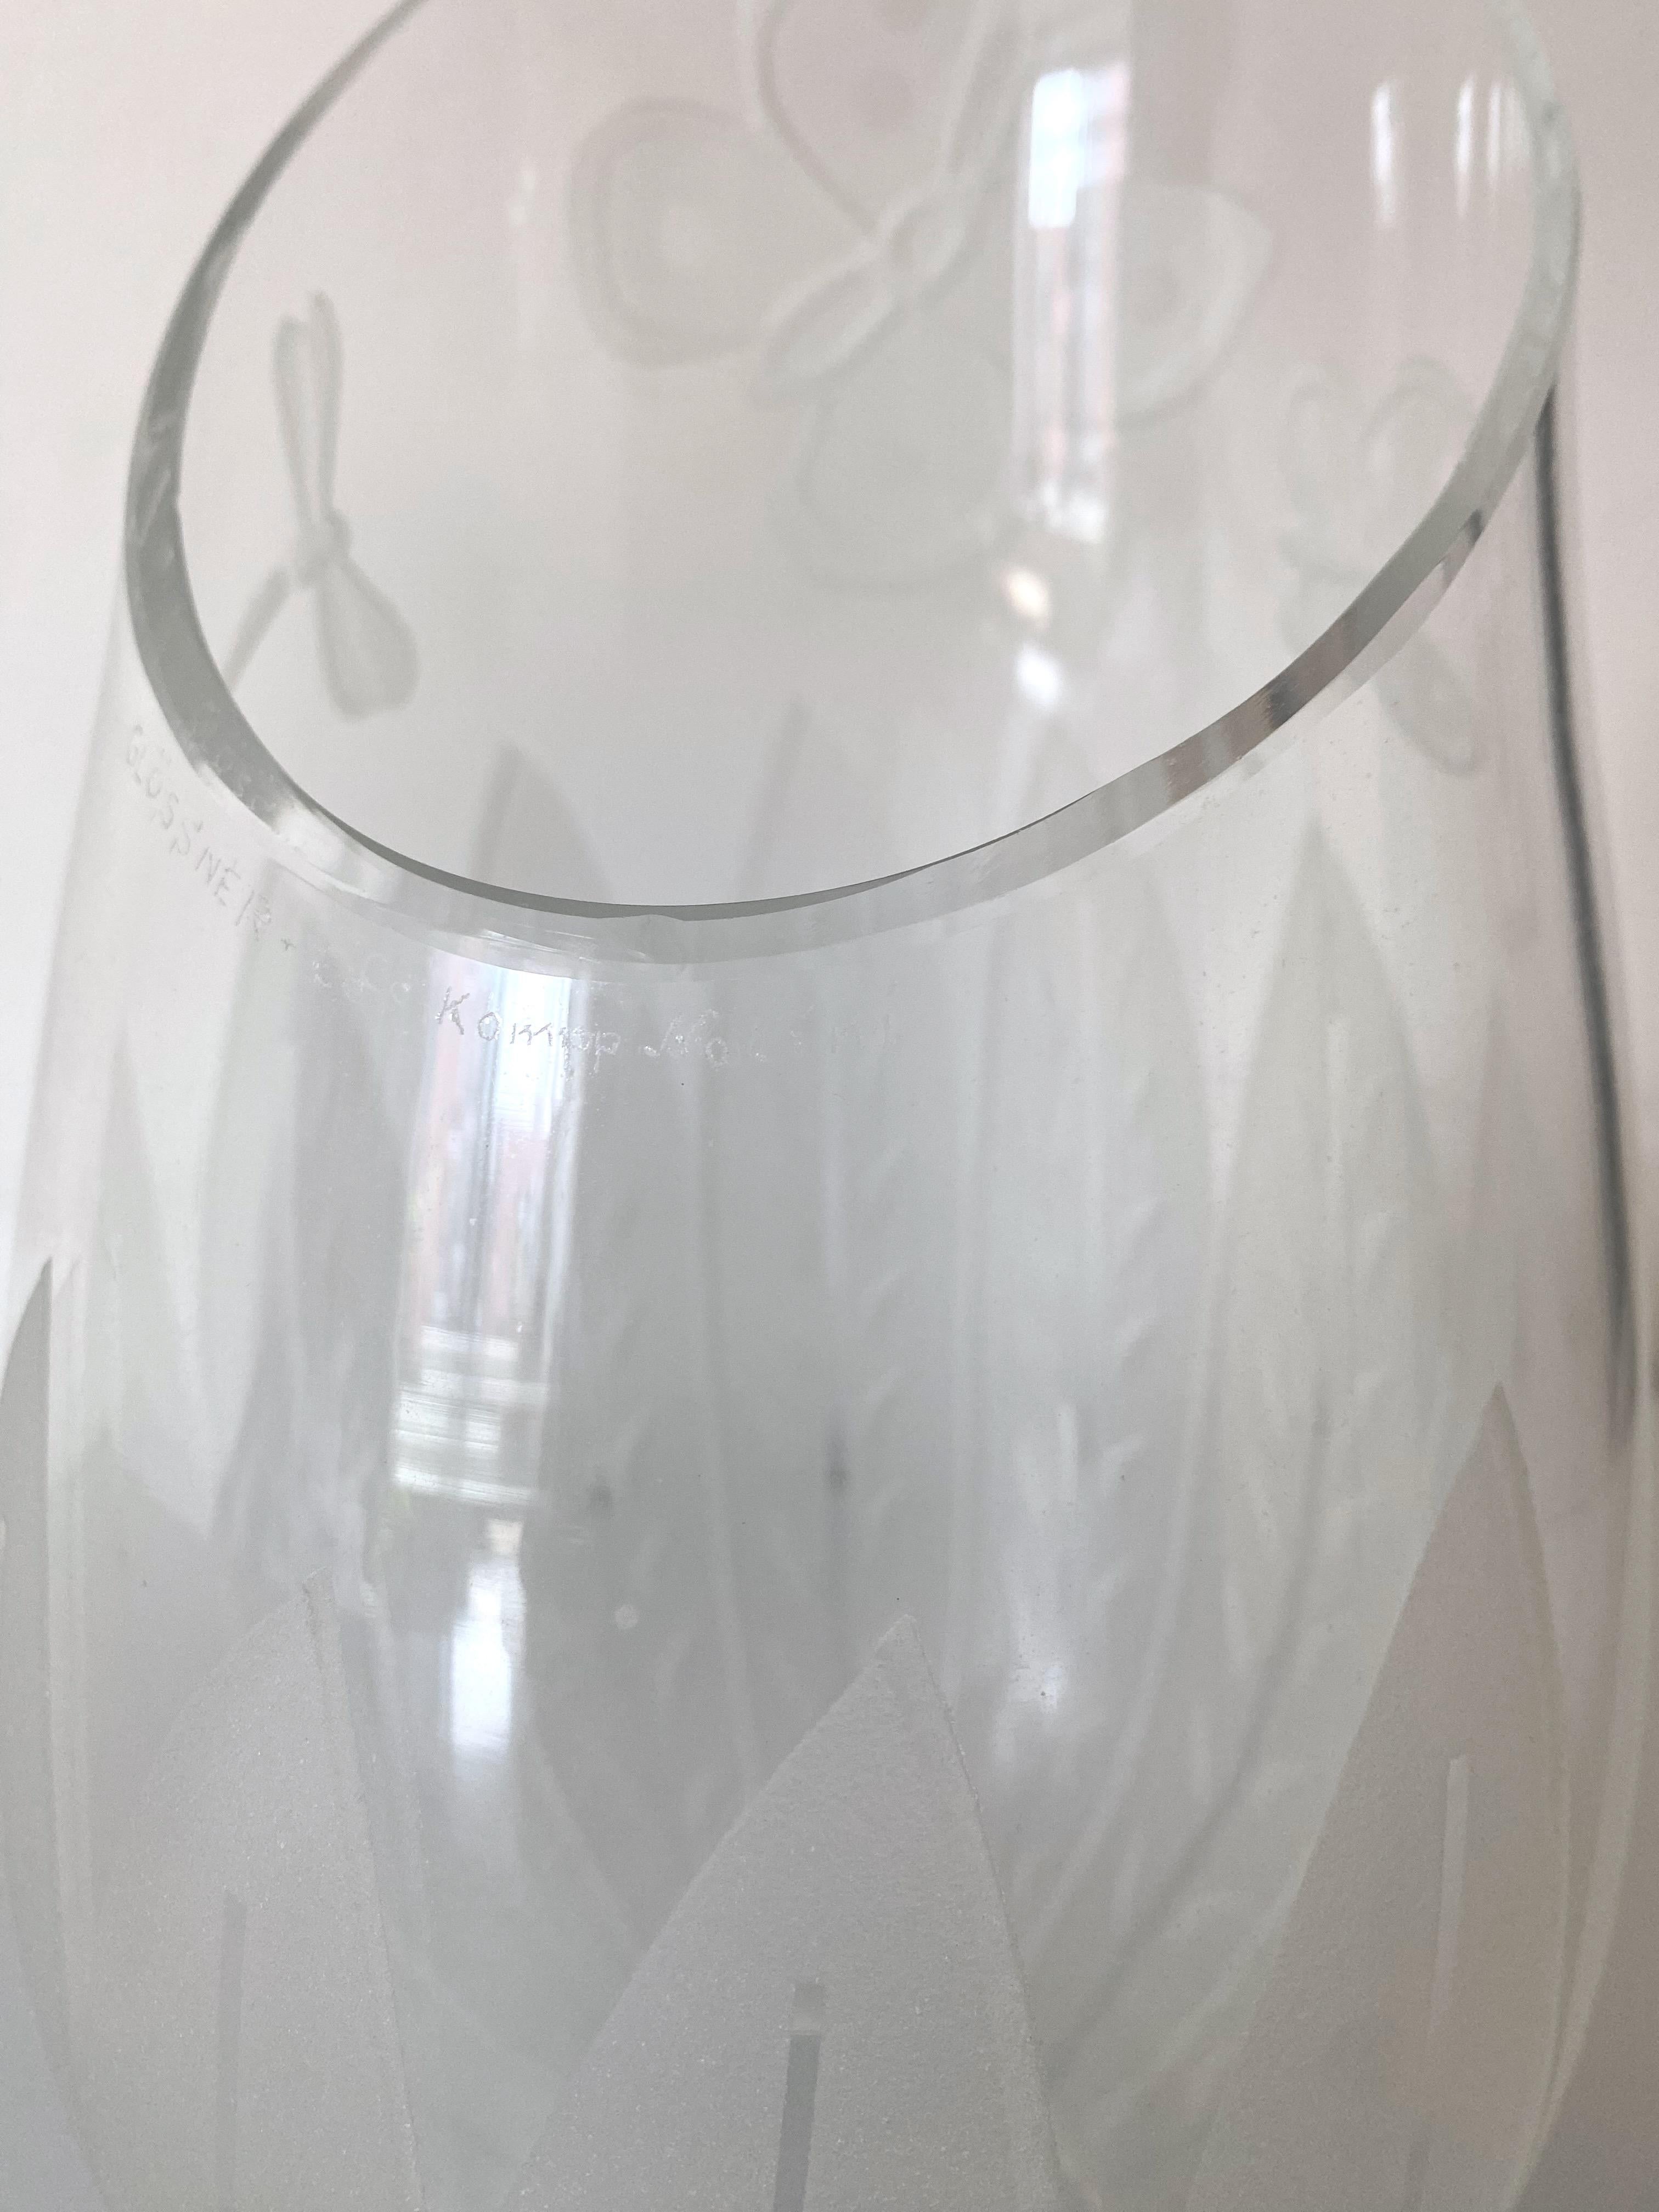 Brass 1940s Glass Chandelier by Bo Notini for Glössner, Sweden